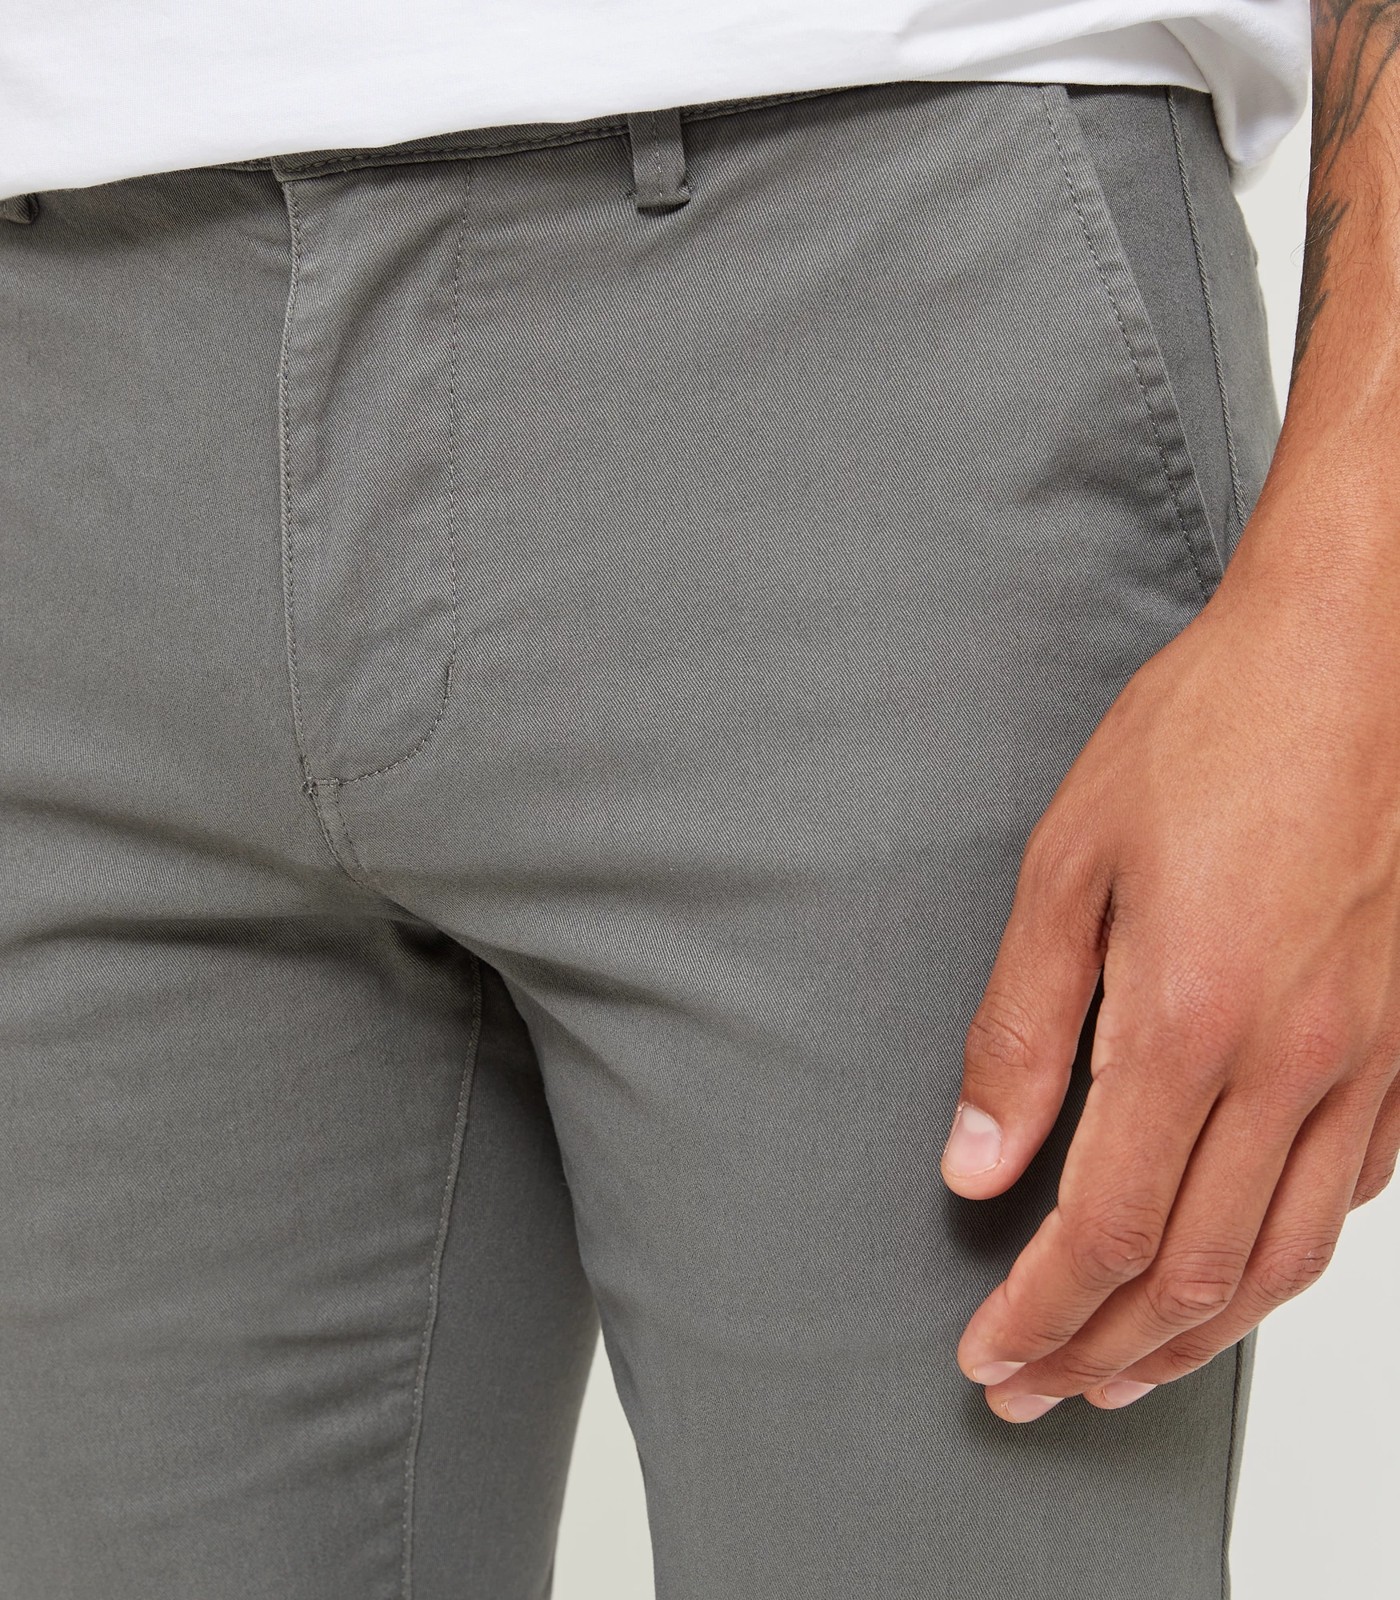 Straight Chino Pants | Target Australia